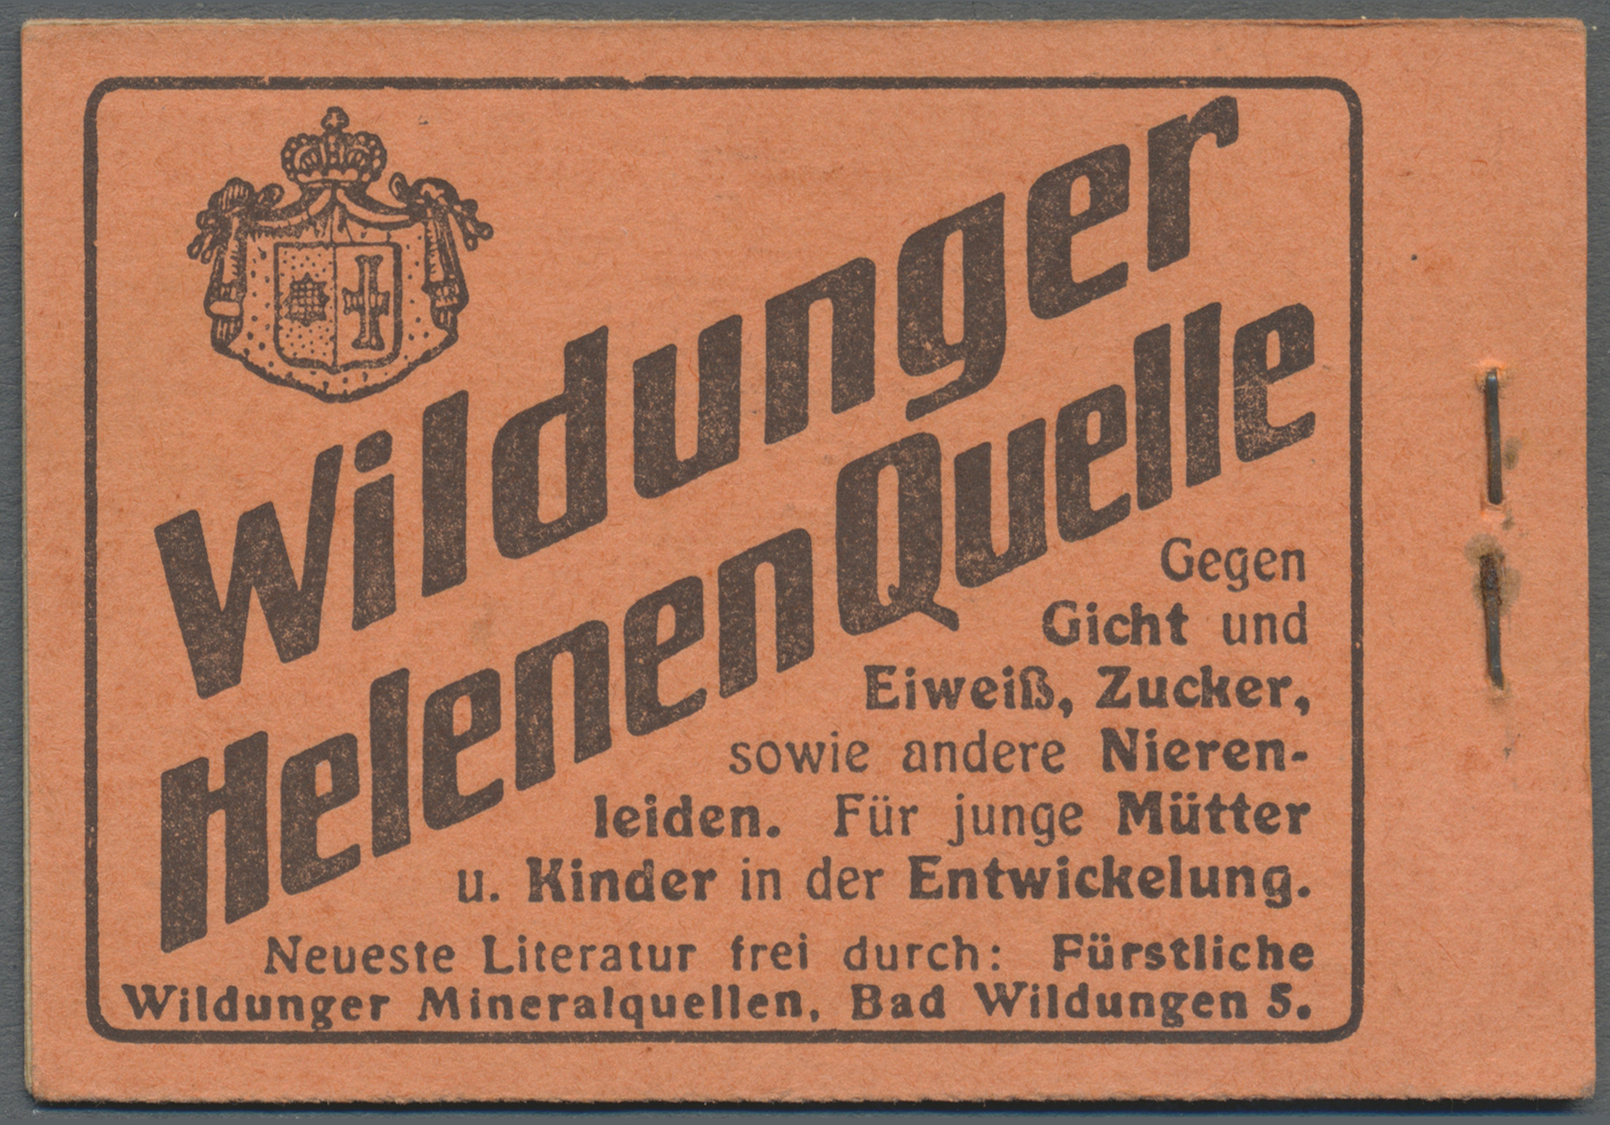 ** Deutsches Reich - Markenheftchen: 1914. Germania 2 Mark, ONr.14, Nur 1 H.-Blatt 9 I Dgz (postfrisch) - Carnets